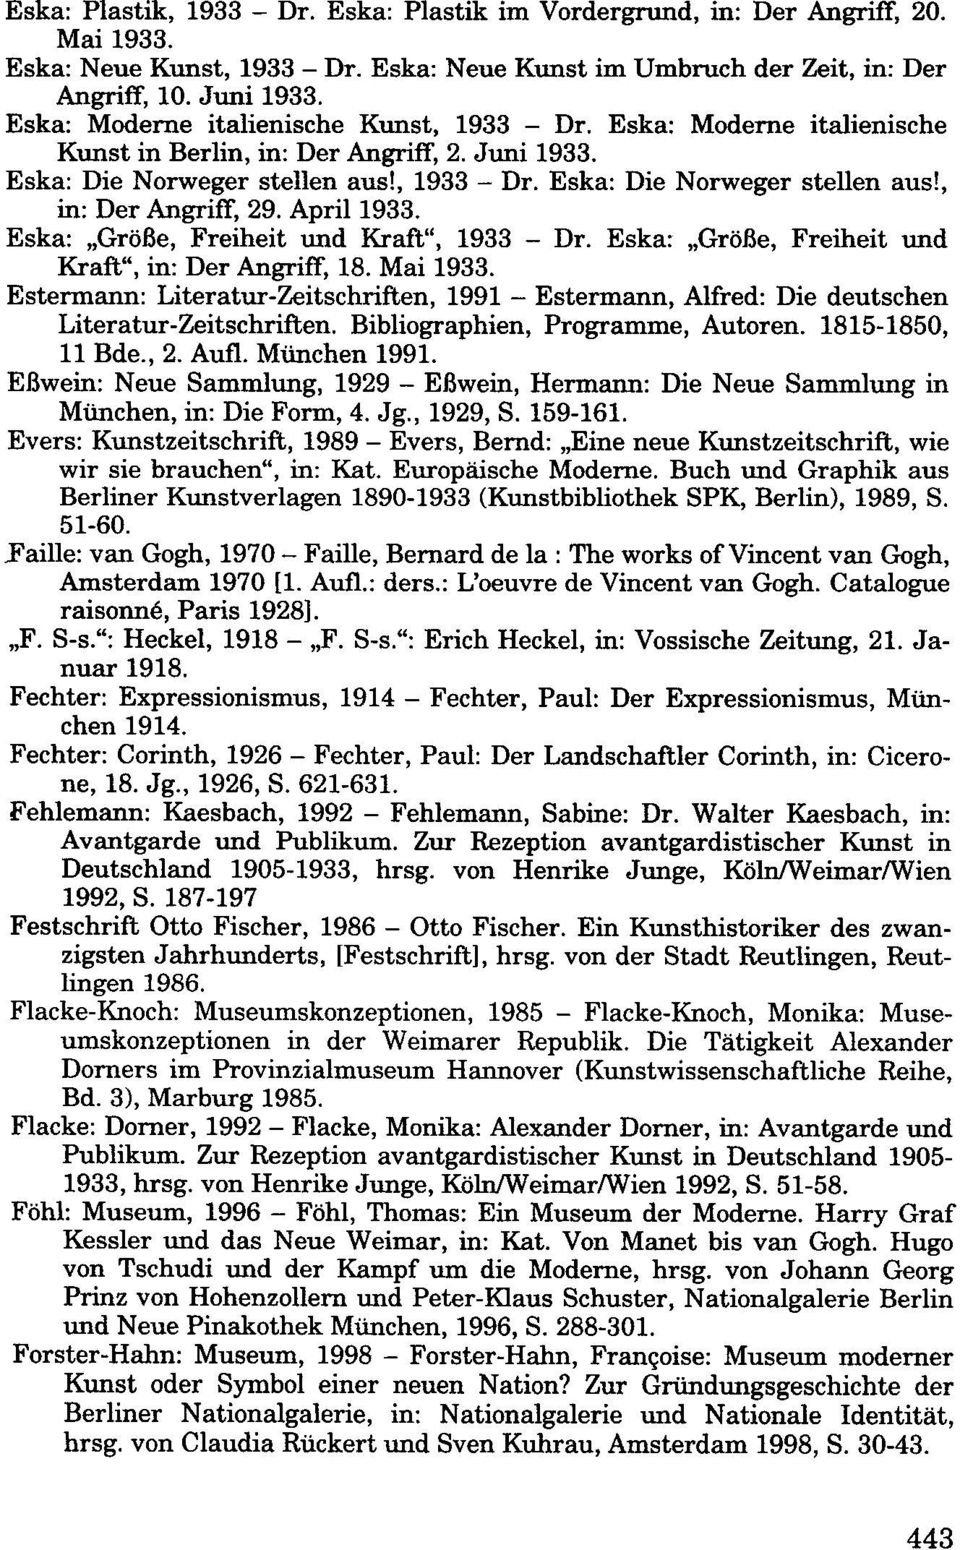 April 1933. Eska: "Größe, Freiheit und Kraft", 1933 - Dr. Eska: "Größe, Freiheit und Kraft", in: Der Angriff, 18. Mai 1933.